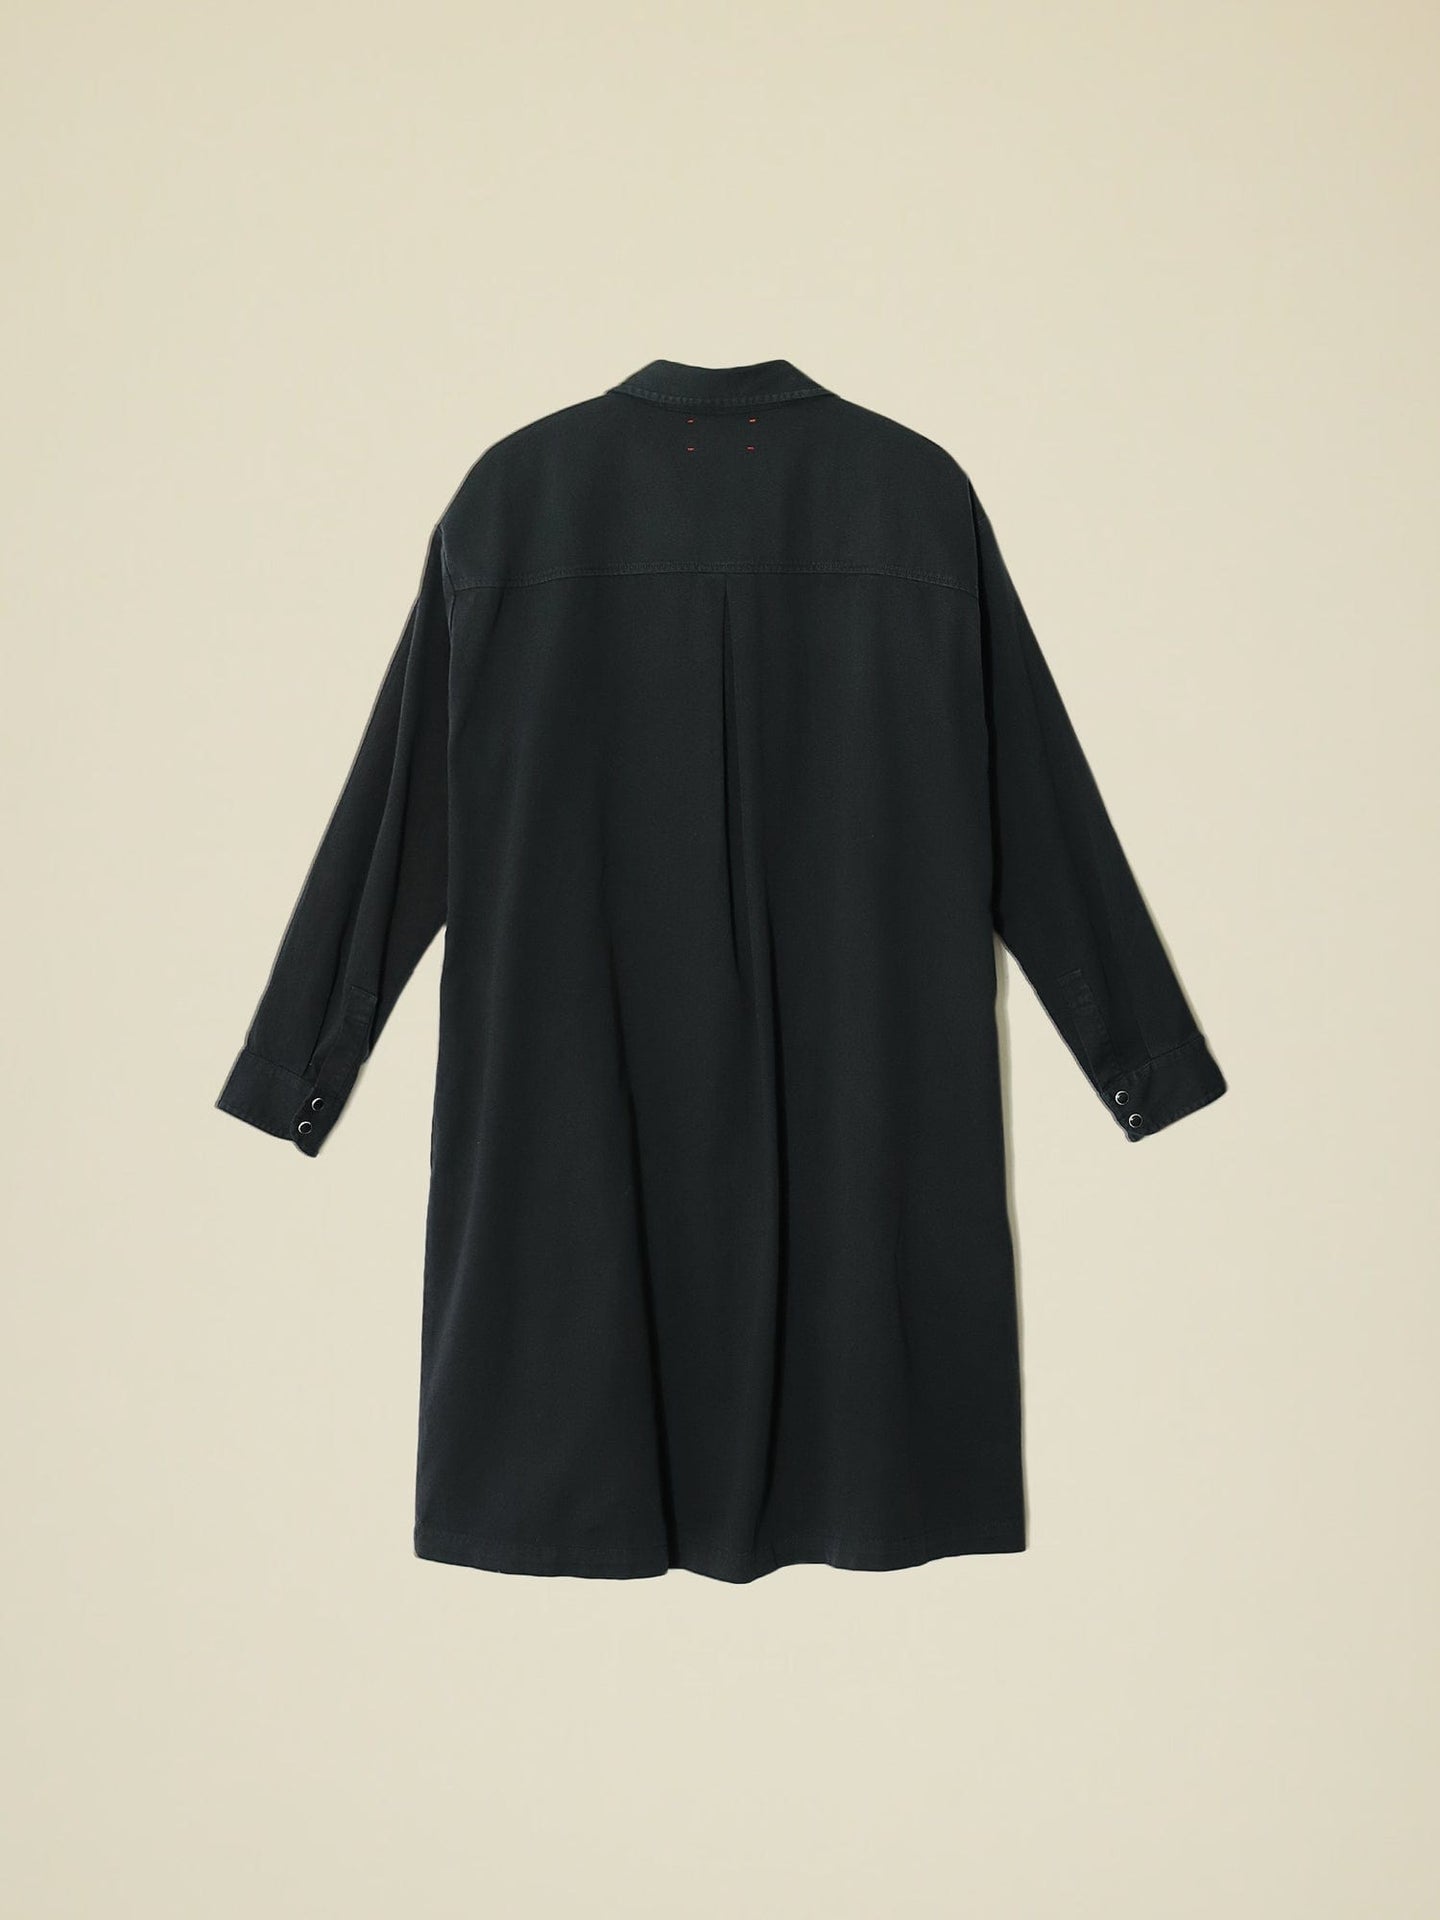 Xirena Dress Vintage Black Keegan Twill Dress